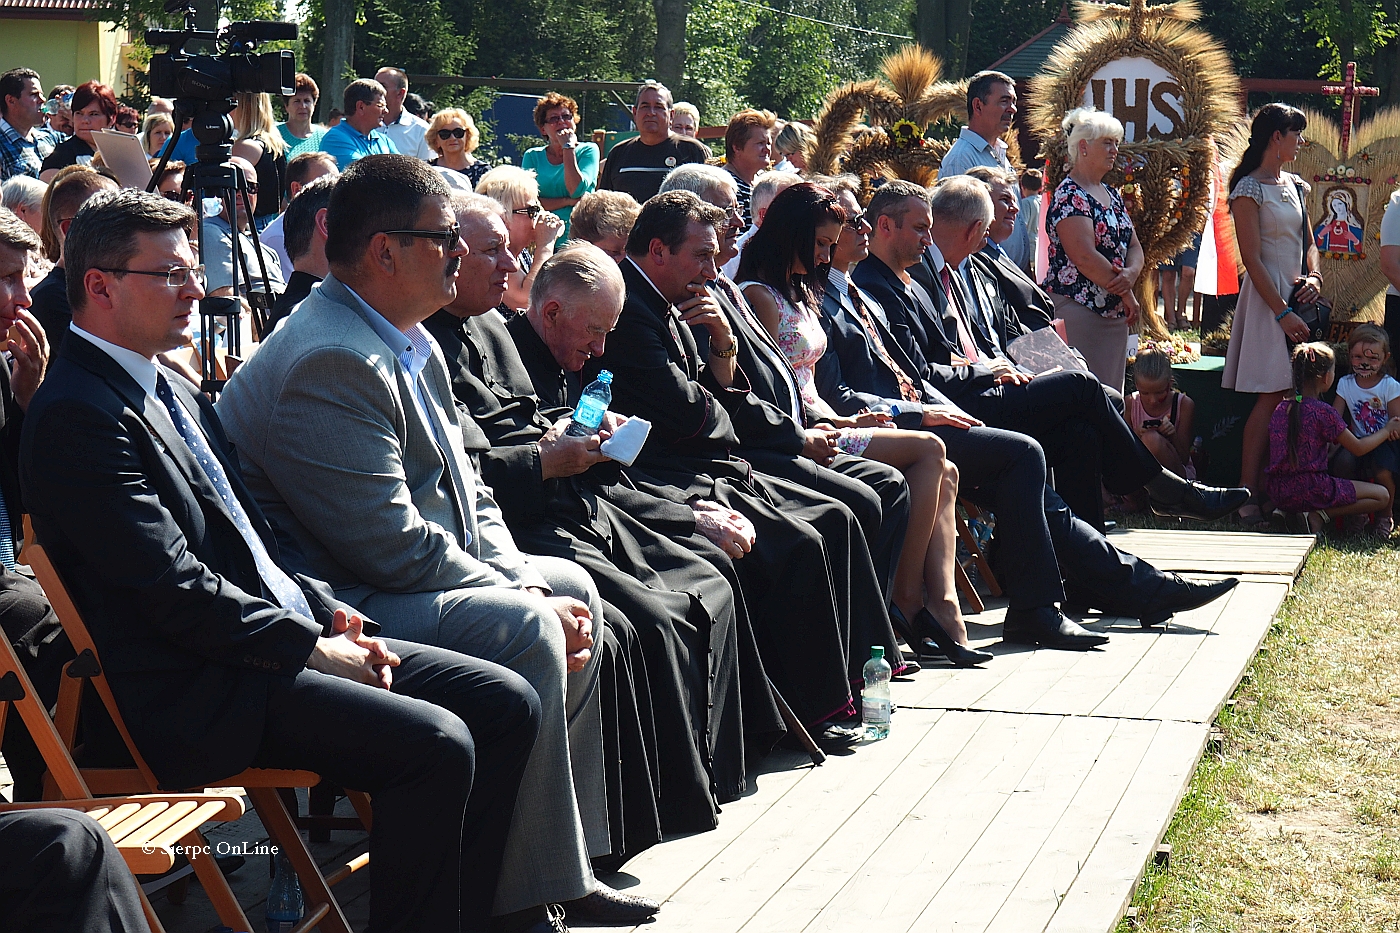 Wadze samorzdowe i duchowni podczas oficjalnej czci Doynek, 30.08.2015 r.